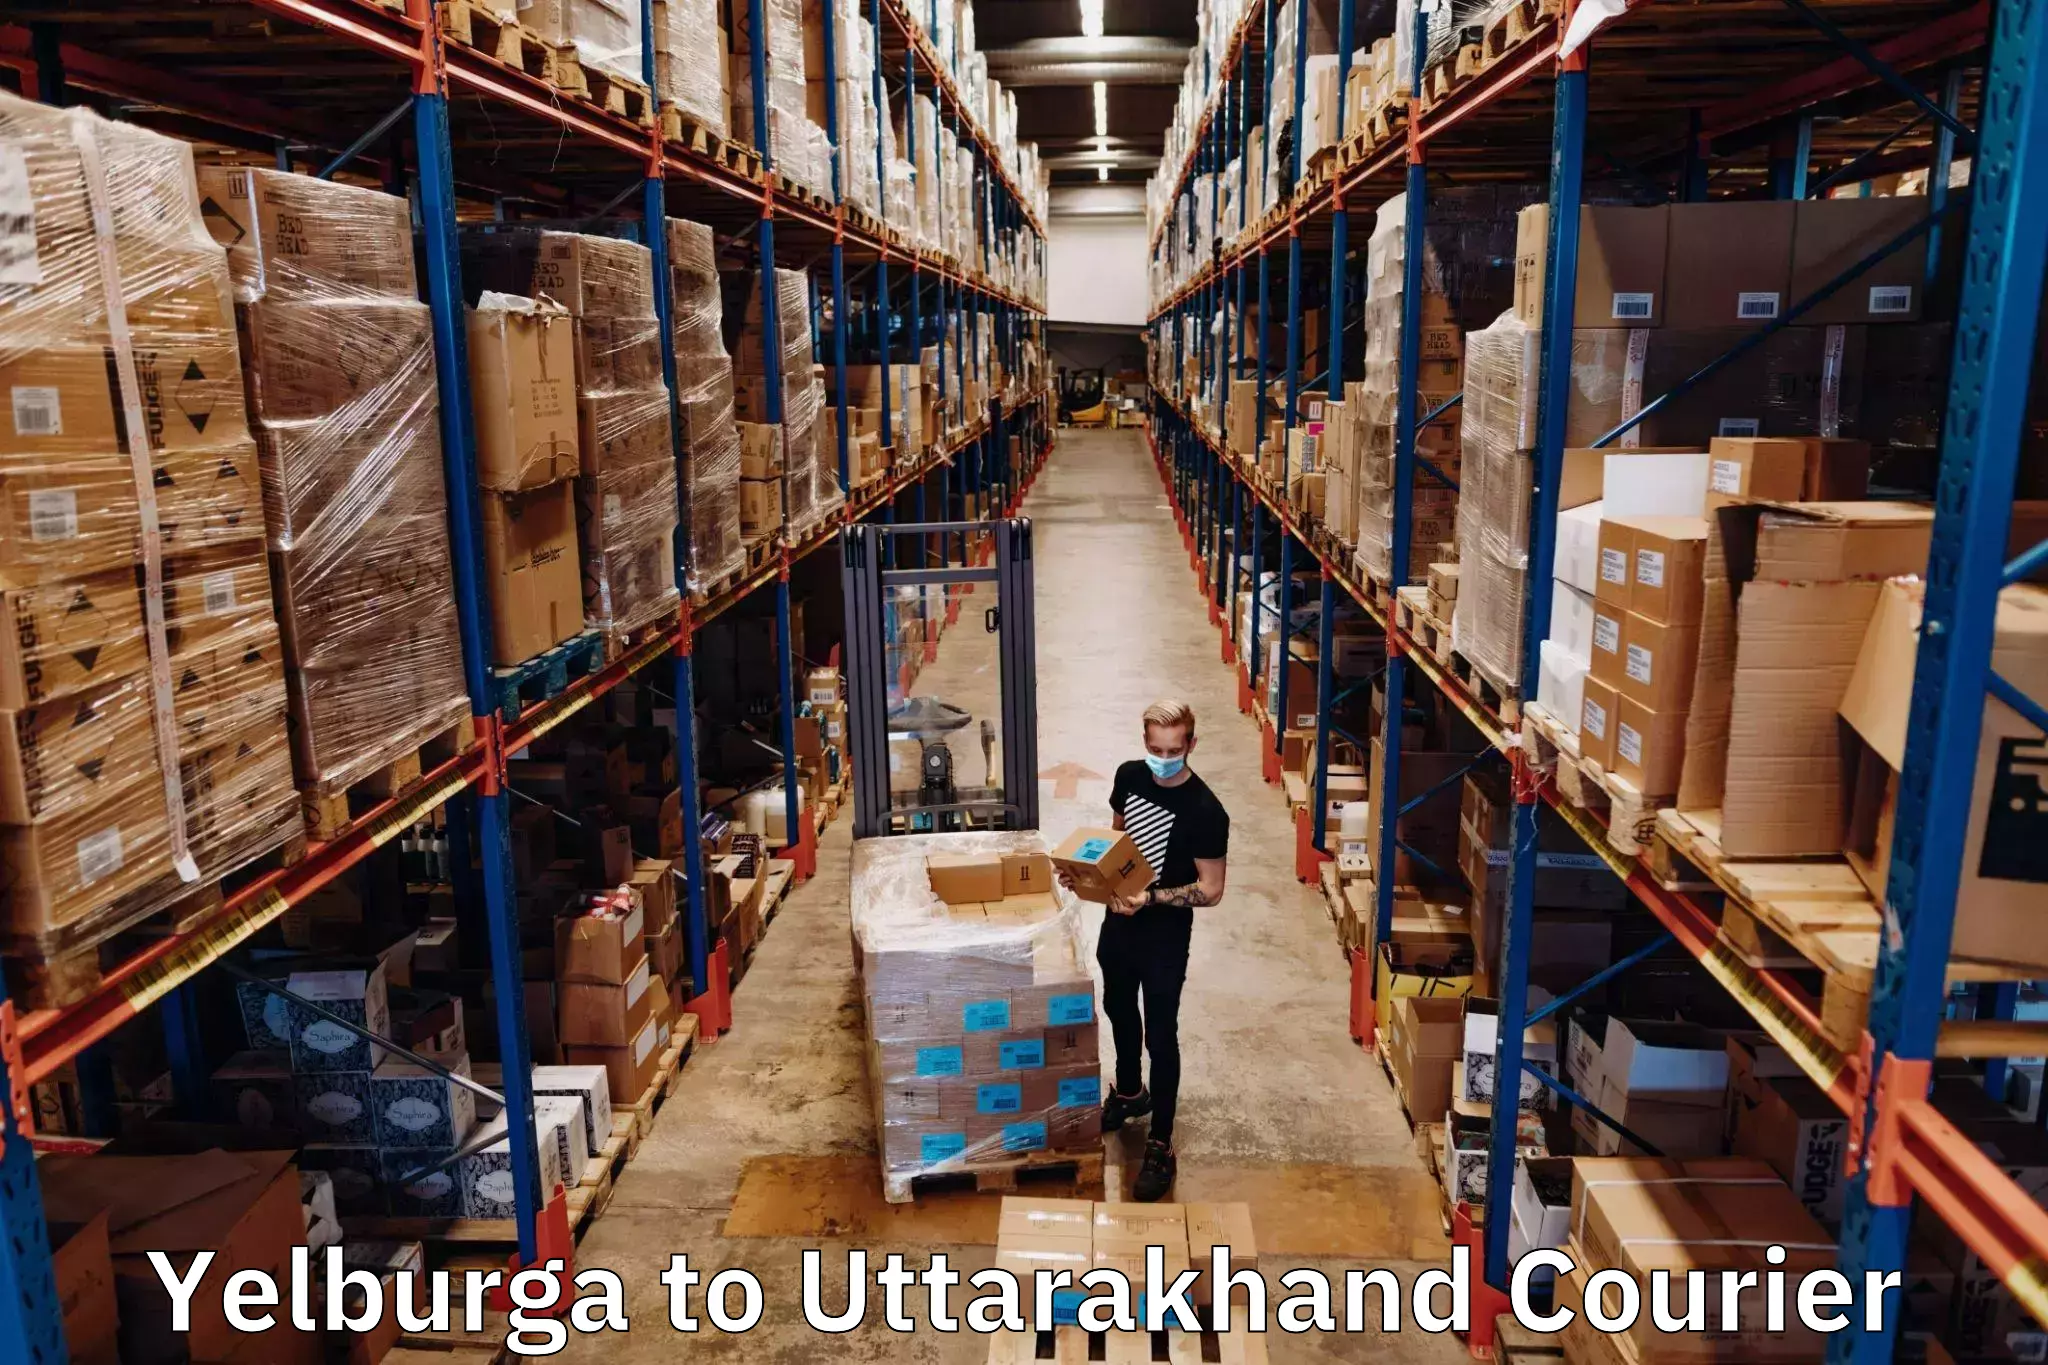 Multi-service courier options Yelburga to Kotdwara